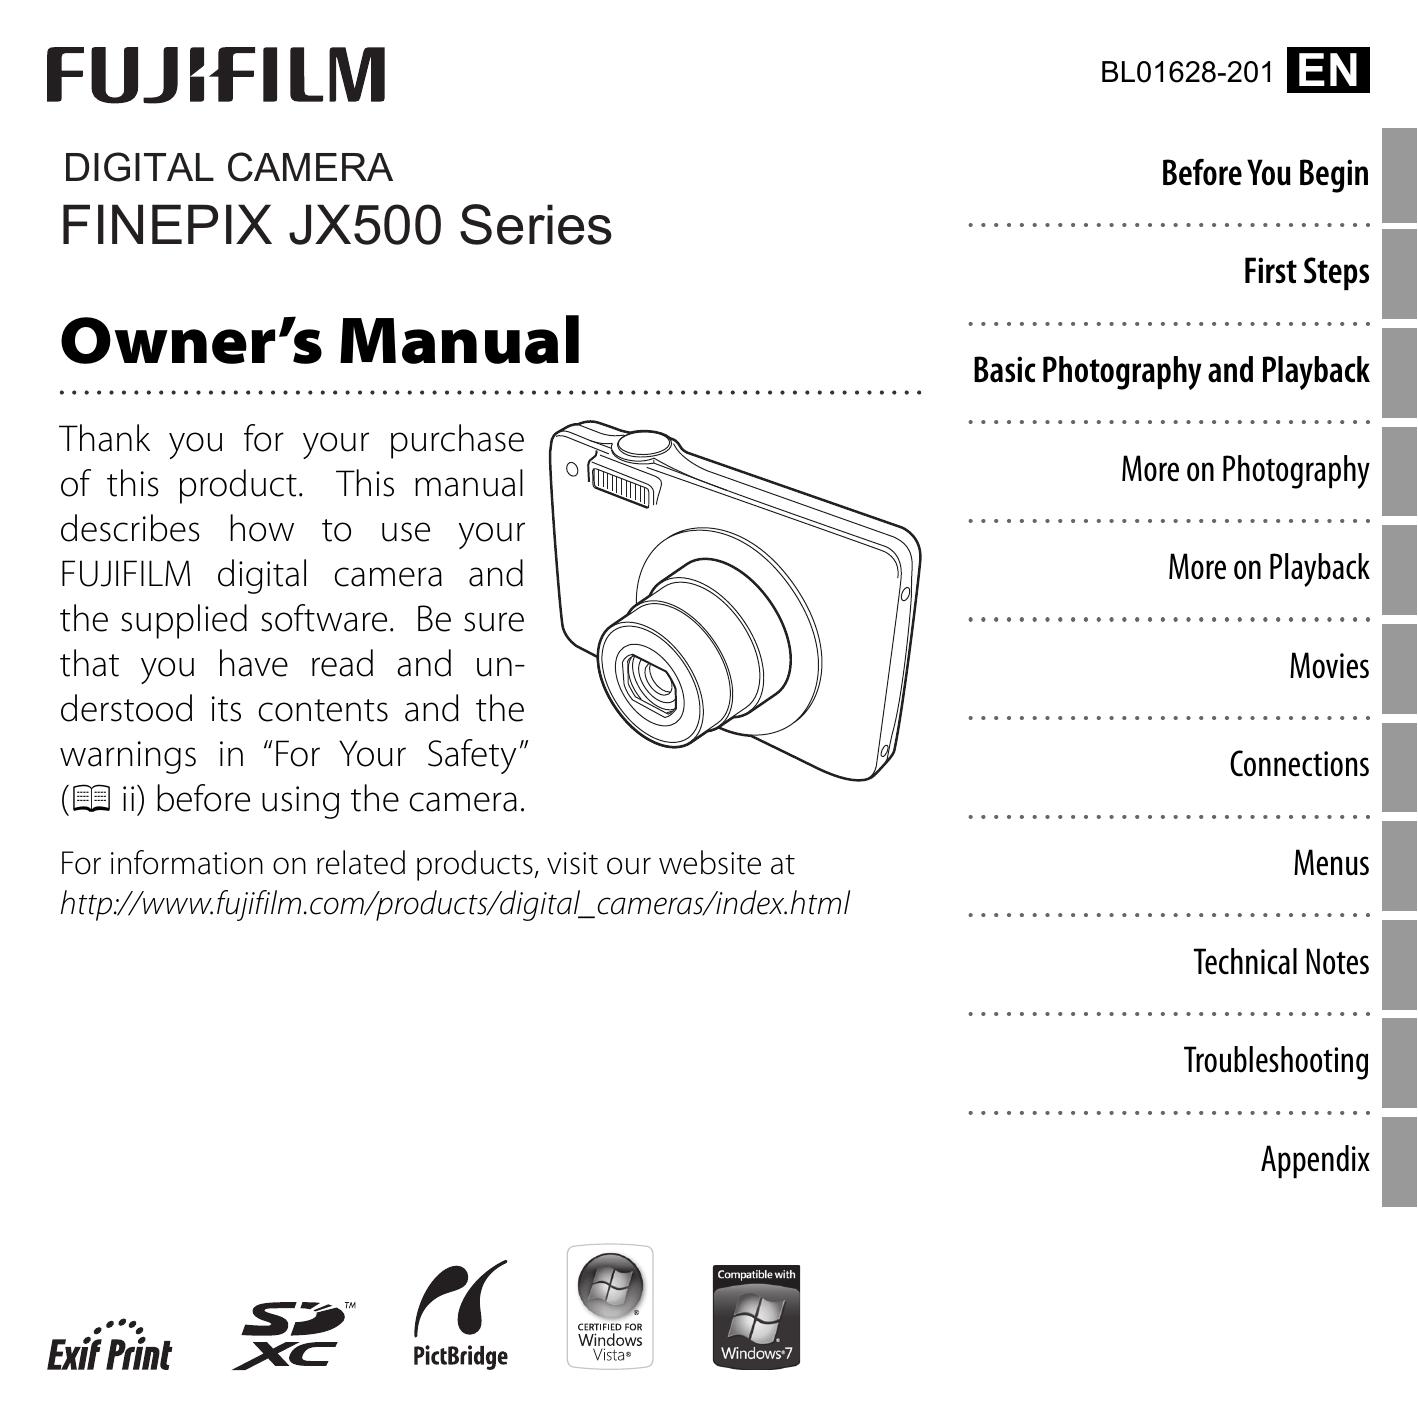 FujiFilm 16215255 Digital Camera User Manual